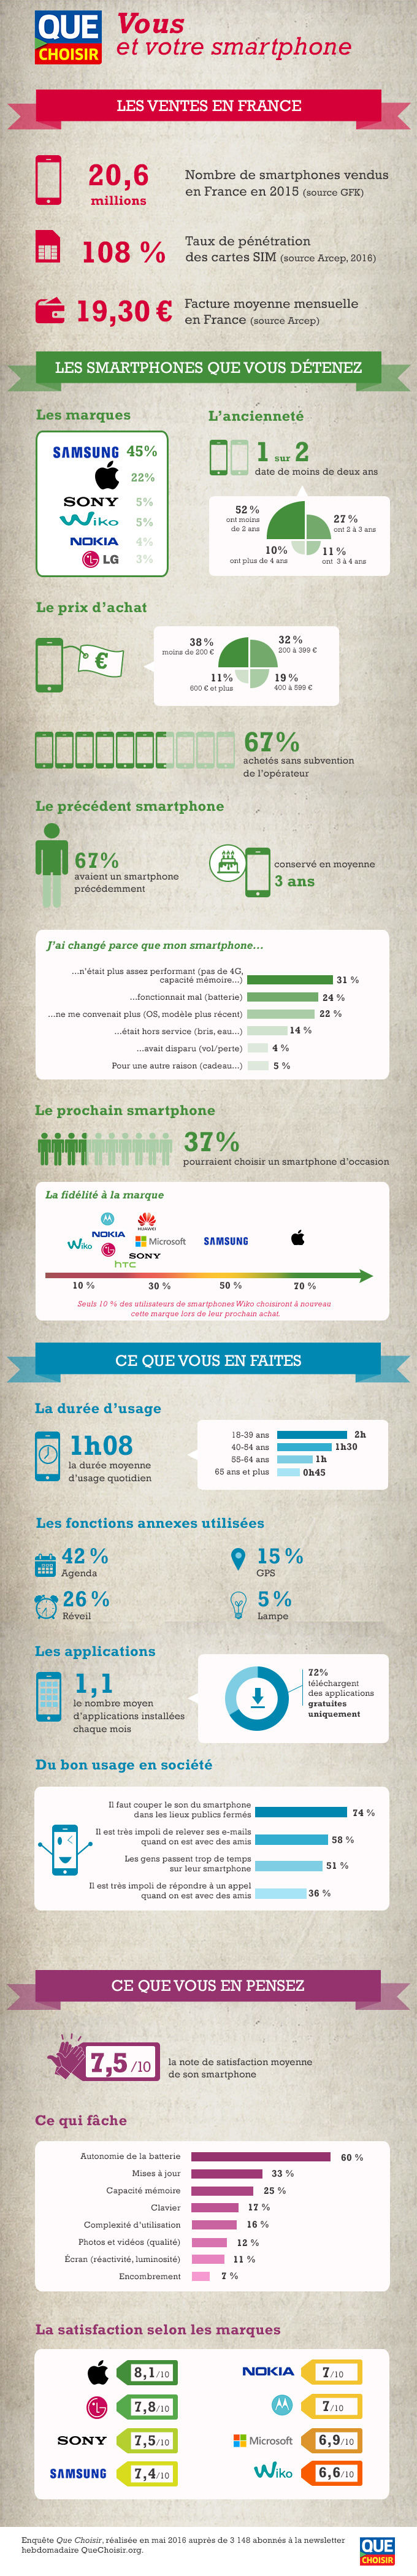 Infographie - Vous et votre smartphone